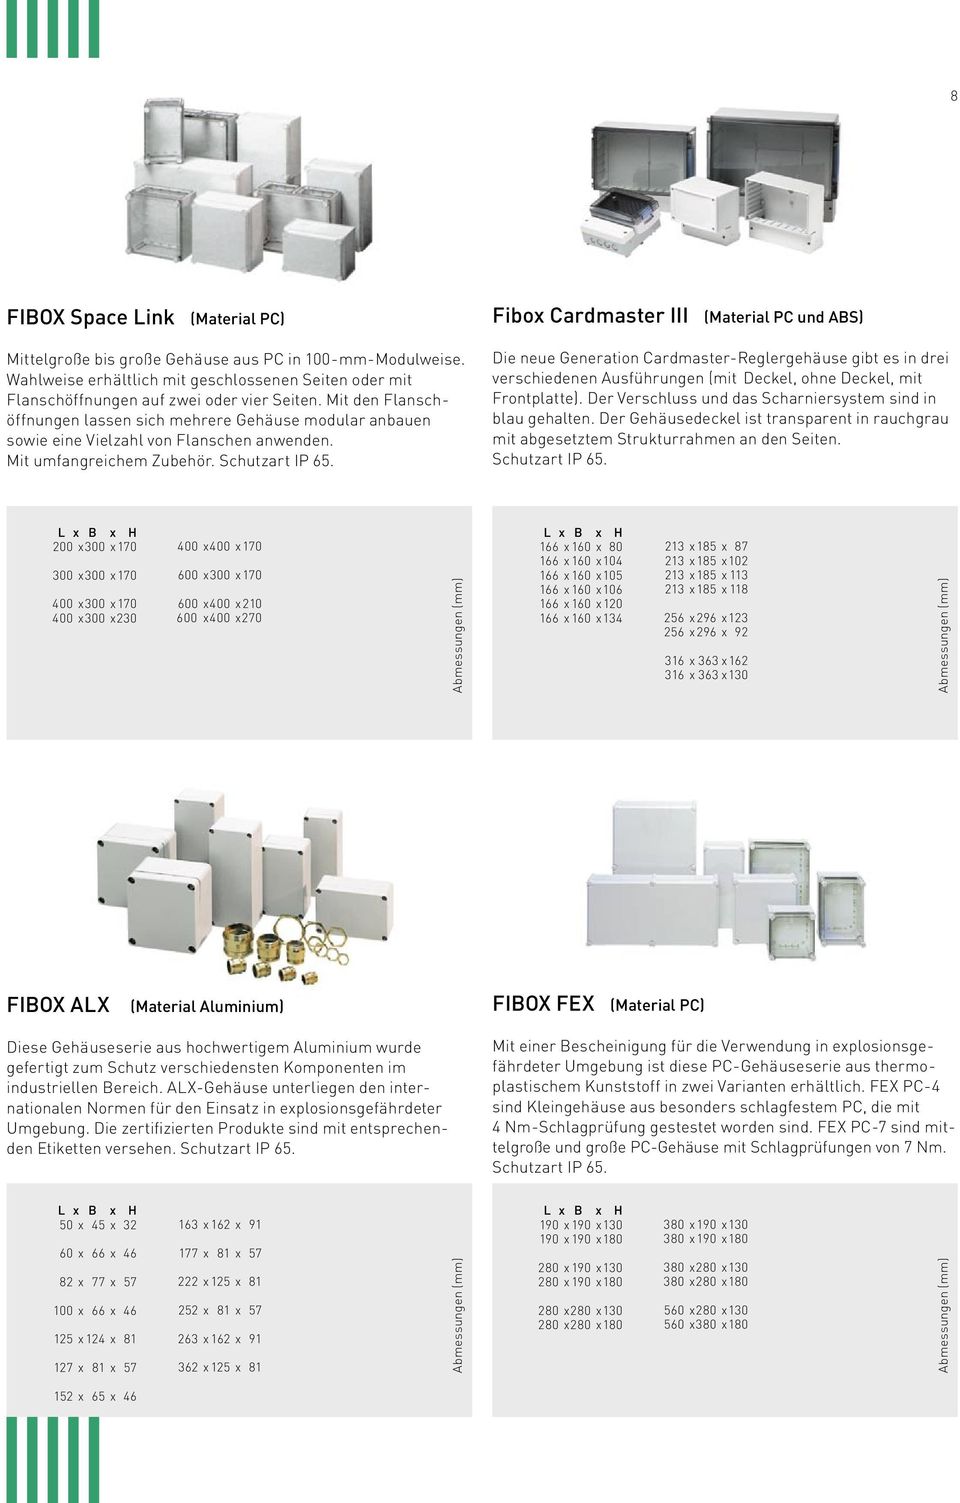 Fibox Cardmaster III (Material PC und ABS) Die neue Generation Cardmaster-Reglergehäuse gibt es in drei verschiedenen Ausführungen (mit Deckel, ohne Deckel, mit Frontplatte).